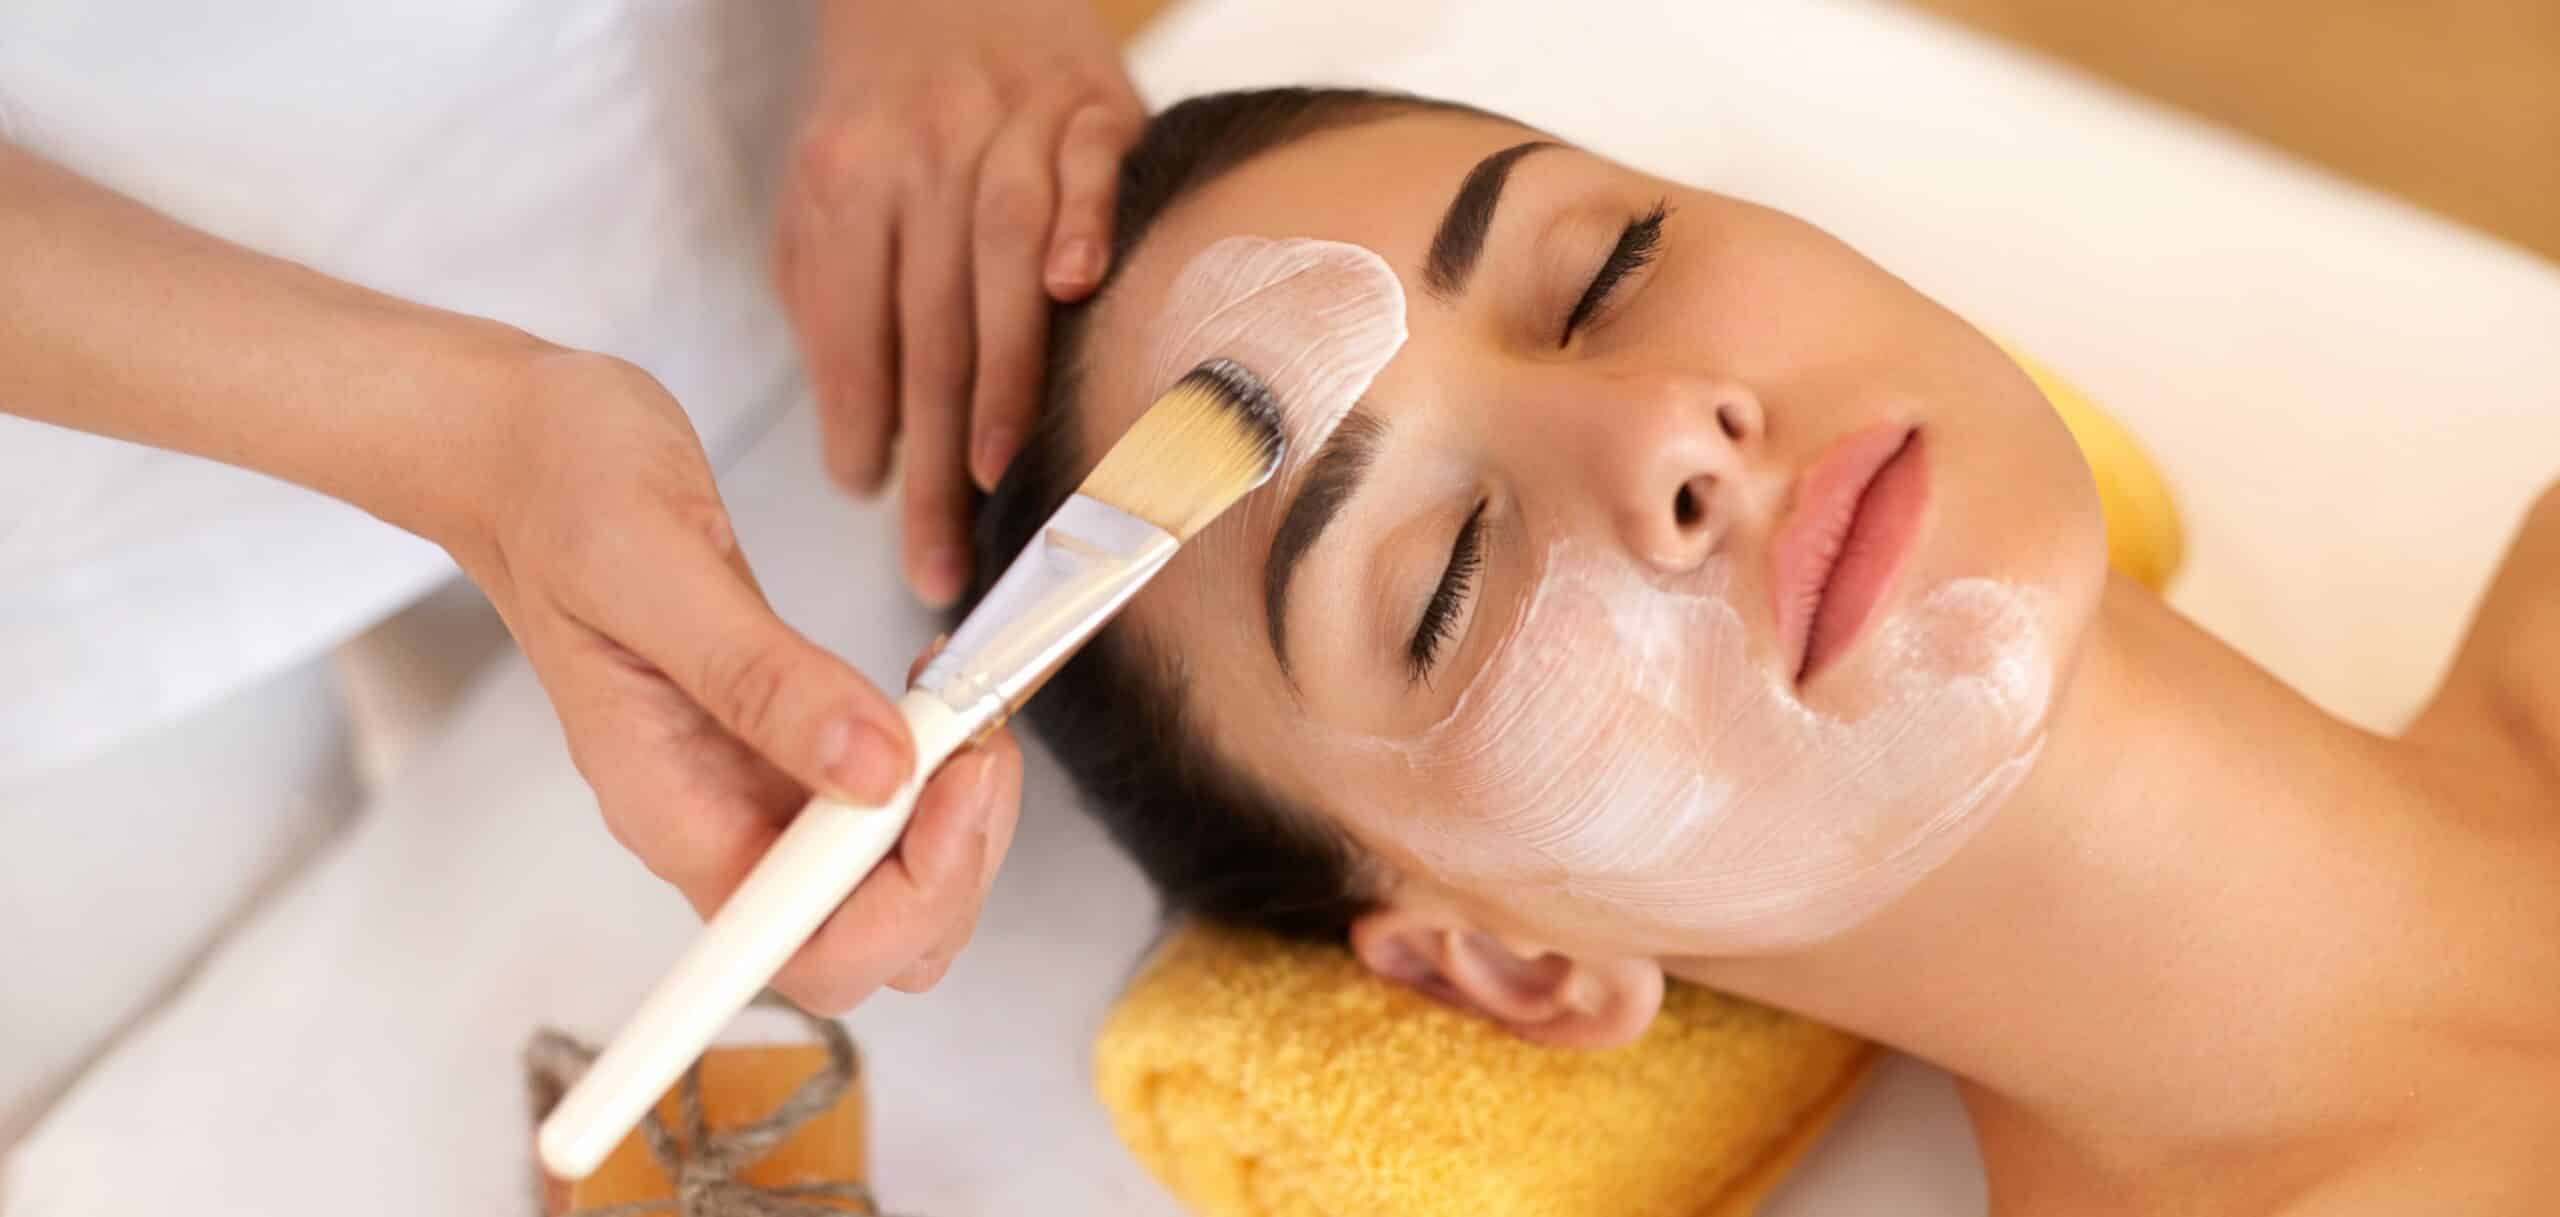 Le peeling est-il efficace contre l’acné ? | Centre Laserio | Paris 8